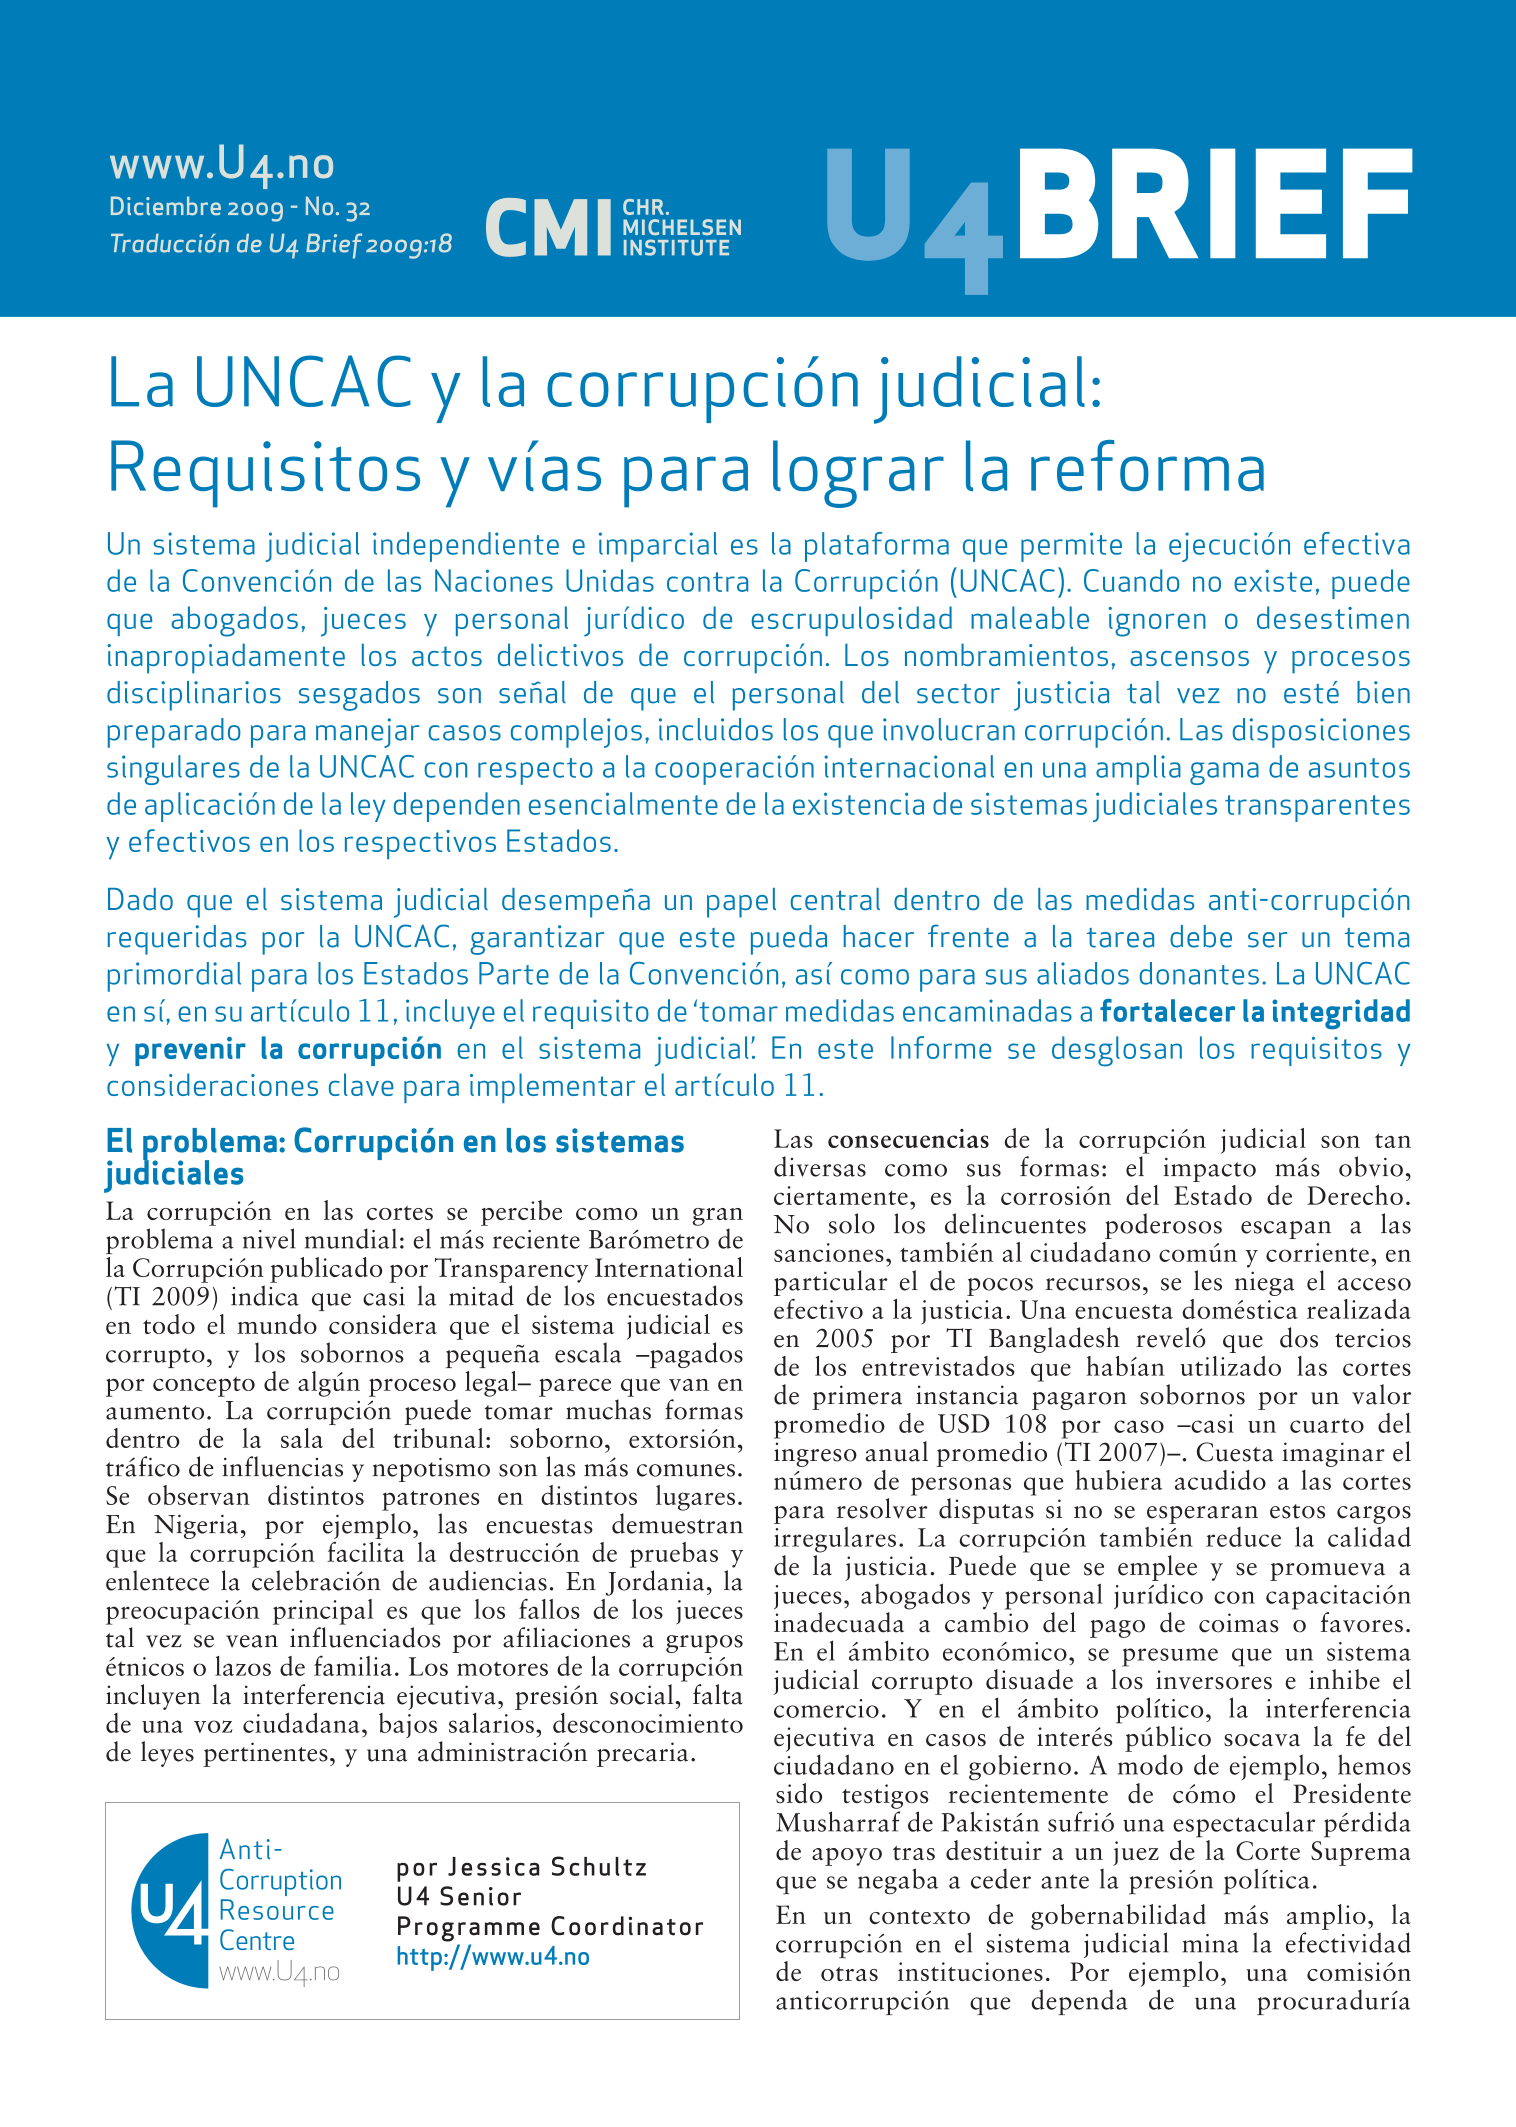 La UNCAC y la corrupción judicial: Requisitos y vías para lograr la reforma